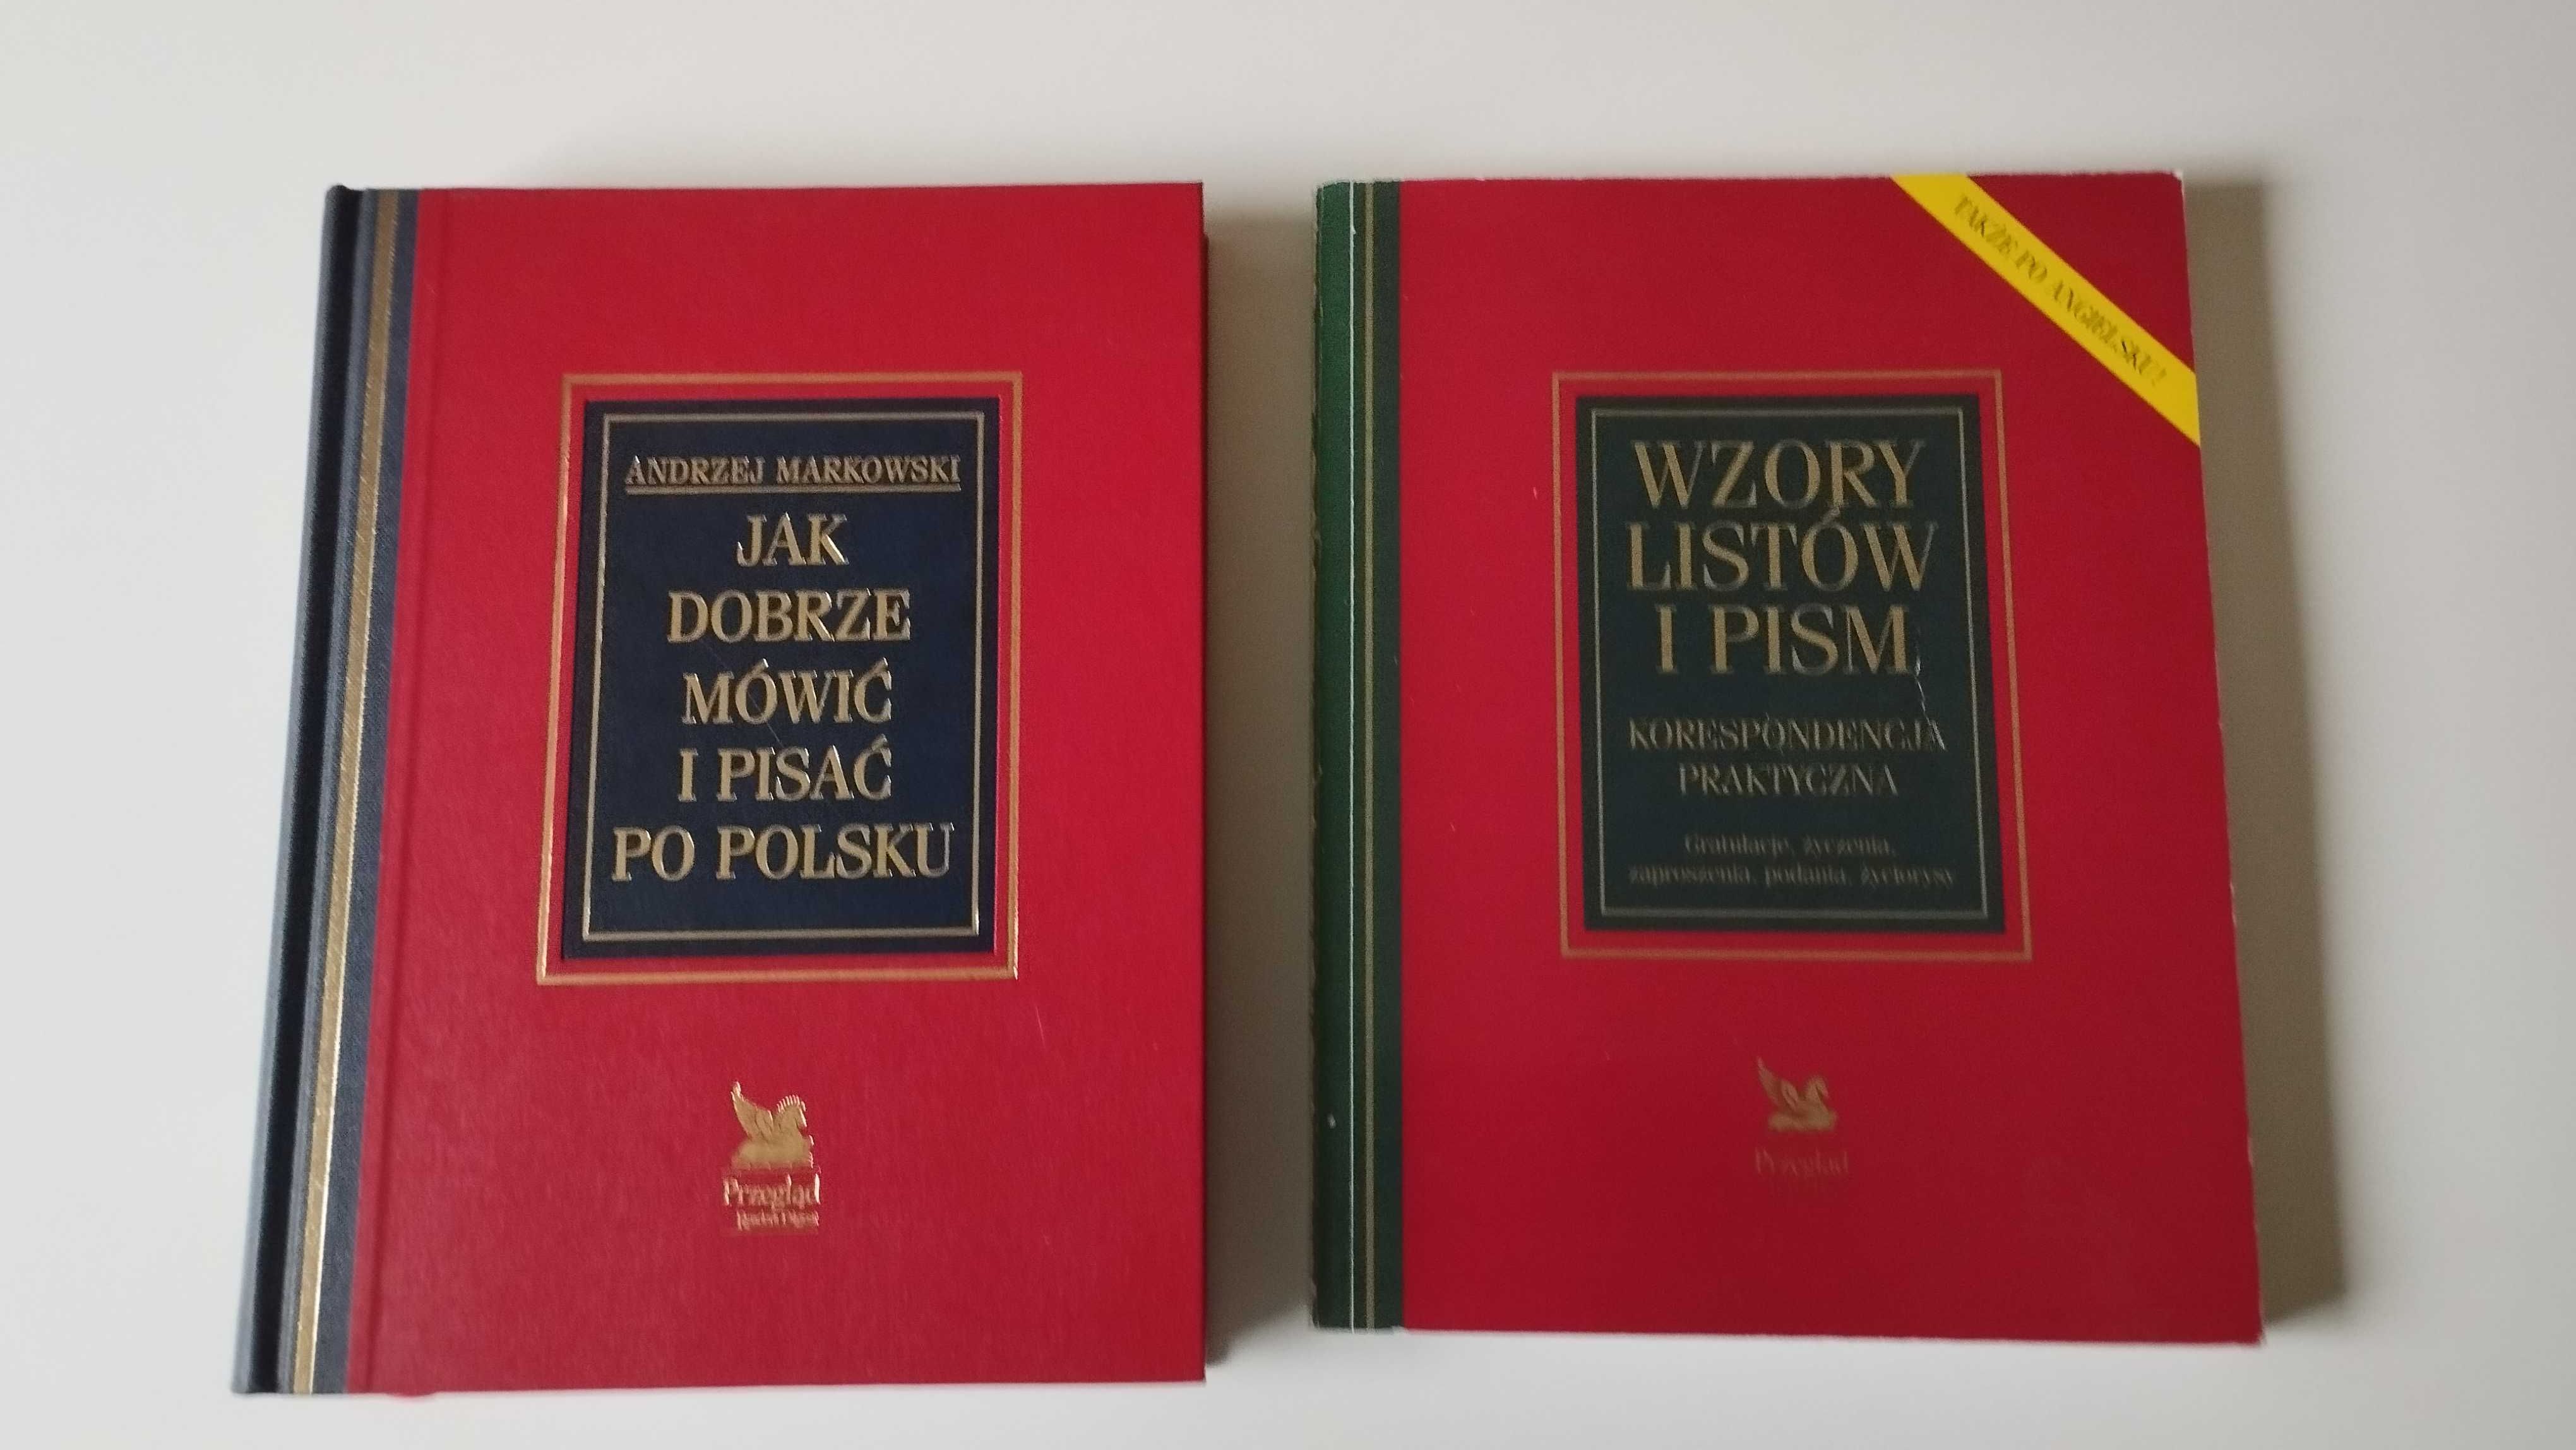 Jak dobrze mówić i pisać po polsku Andrzej Markowski + wzory listów